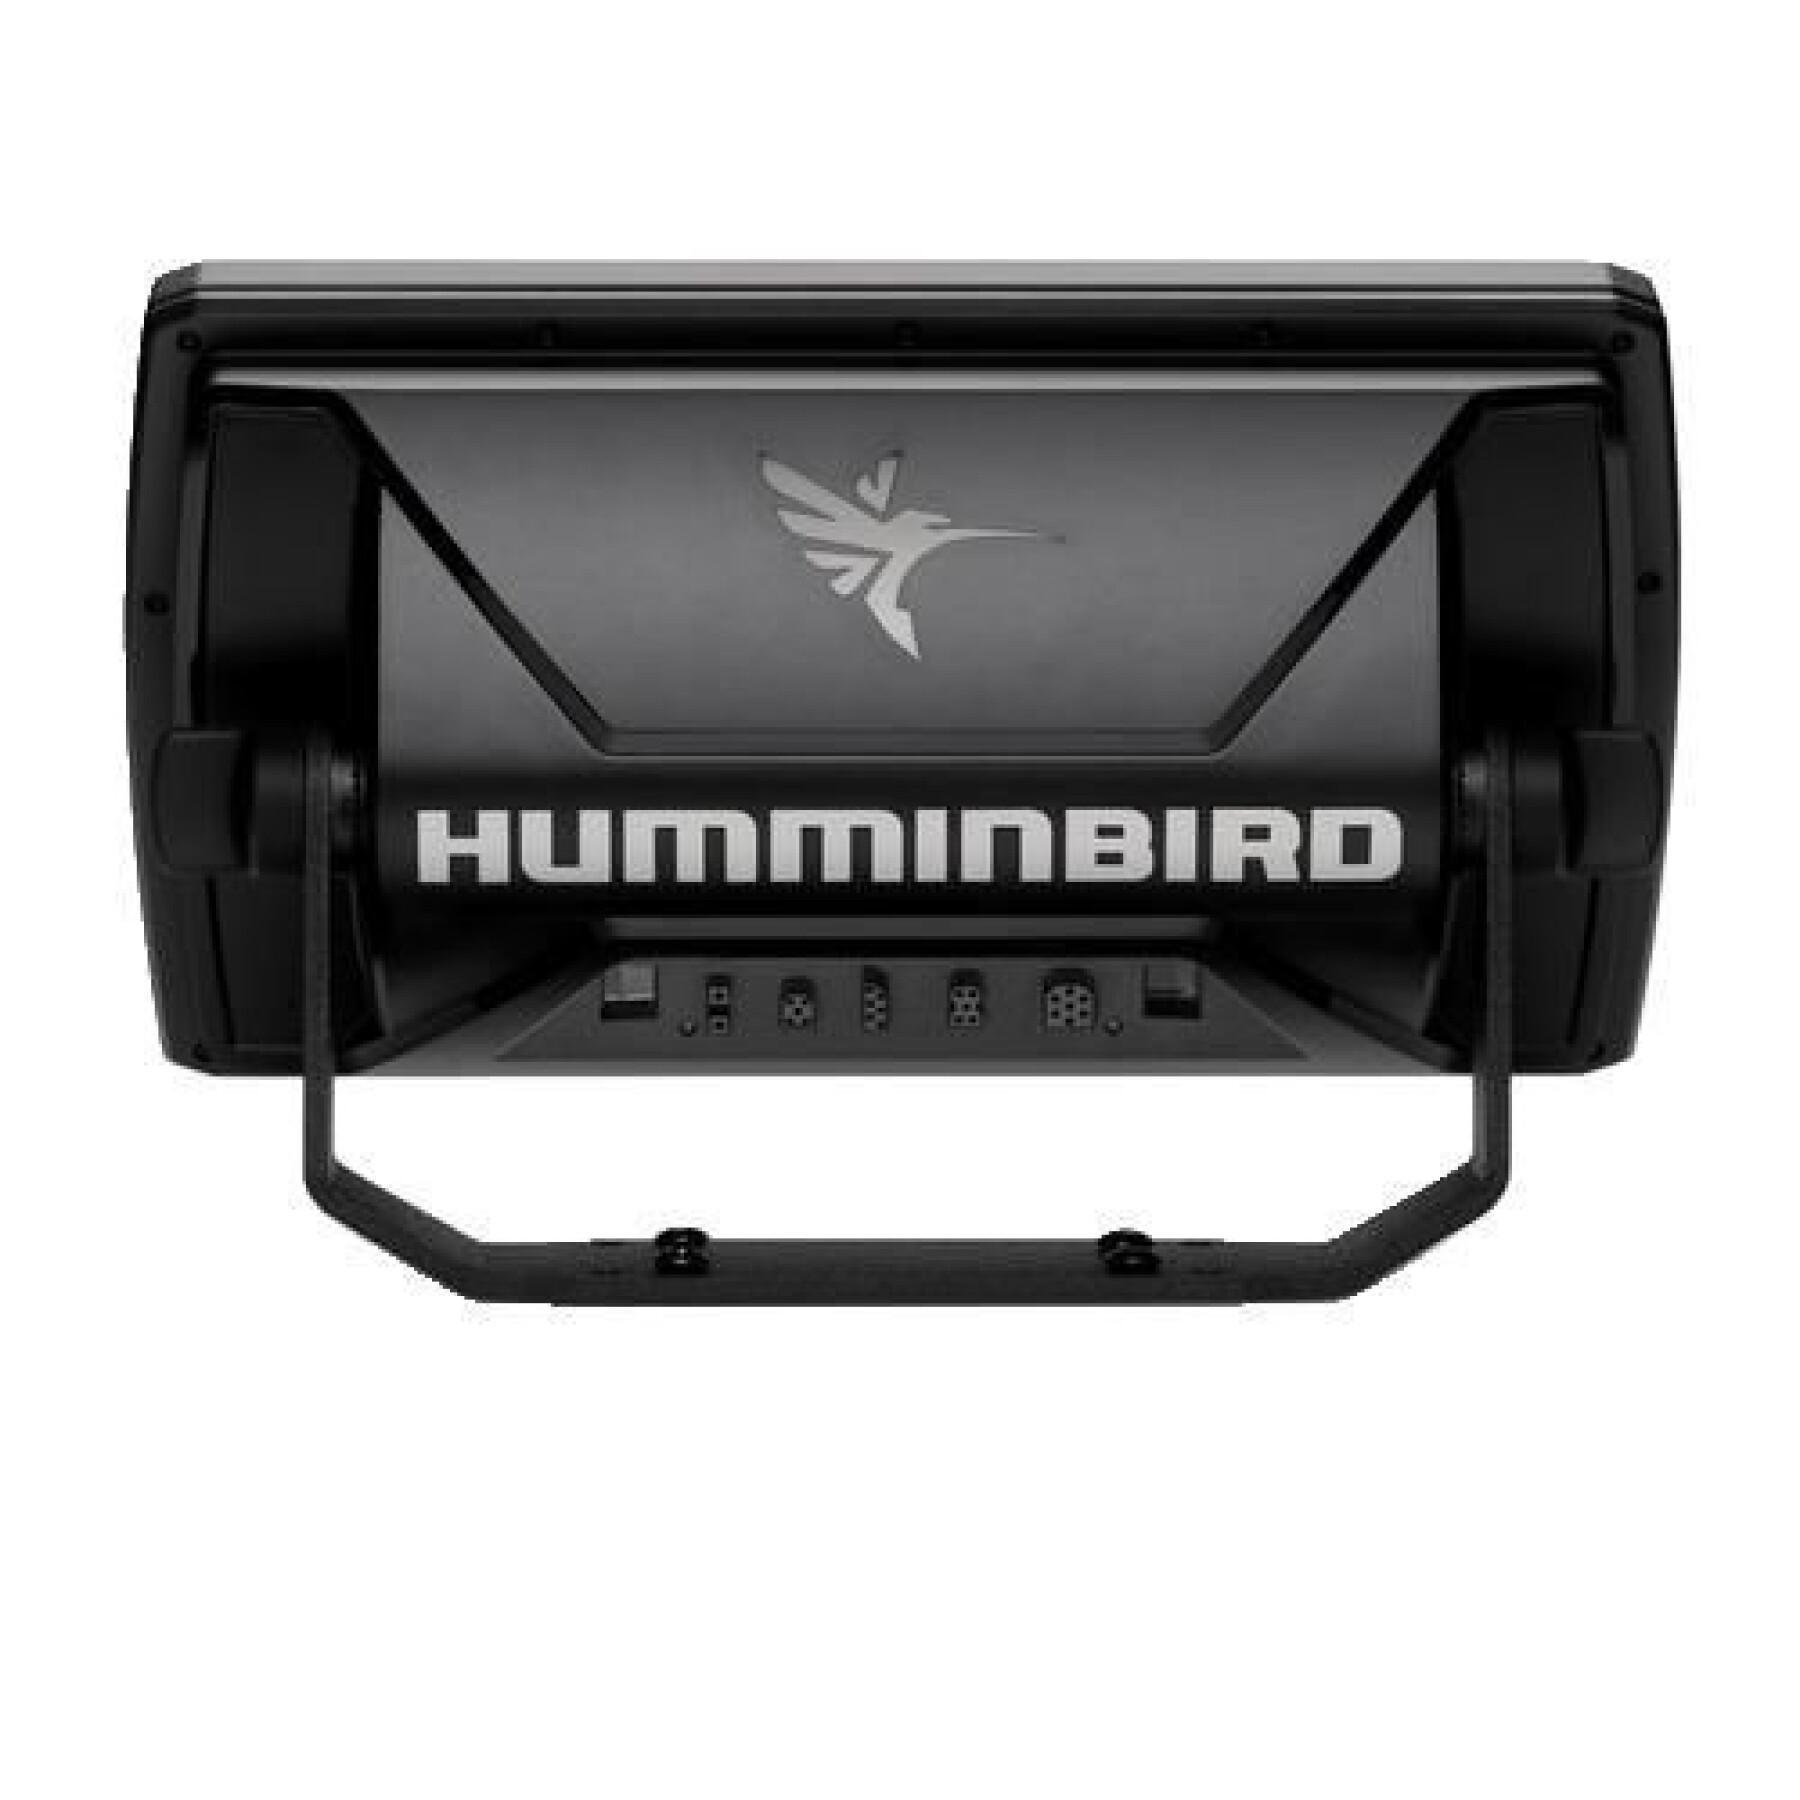 GPS et sondeur Humminbird Helix 9G4N Chirp Mega DI+ (411370-1)